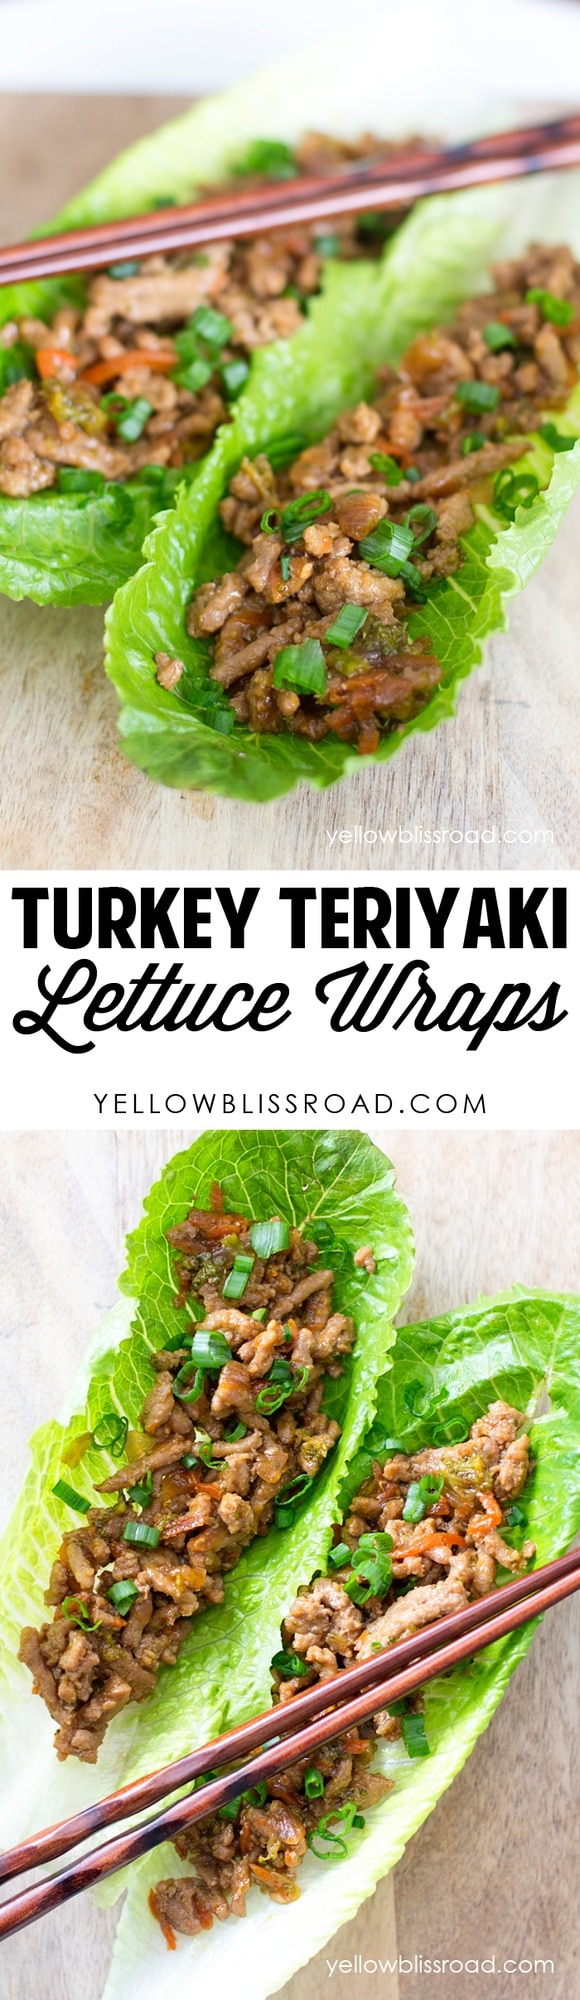 Turkey Teriyaki Lettuce Wraps